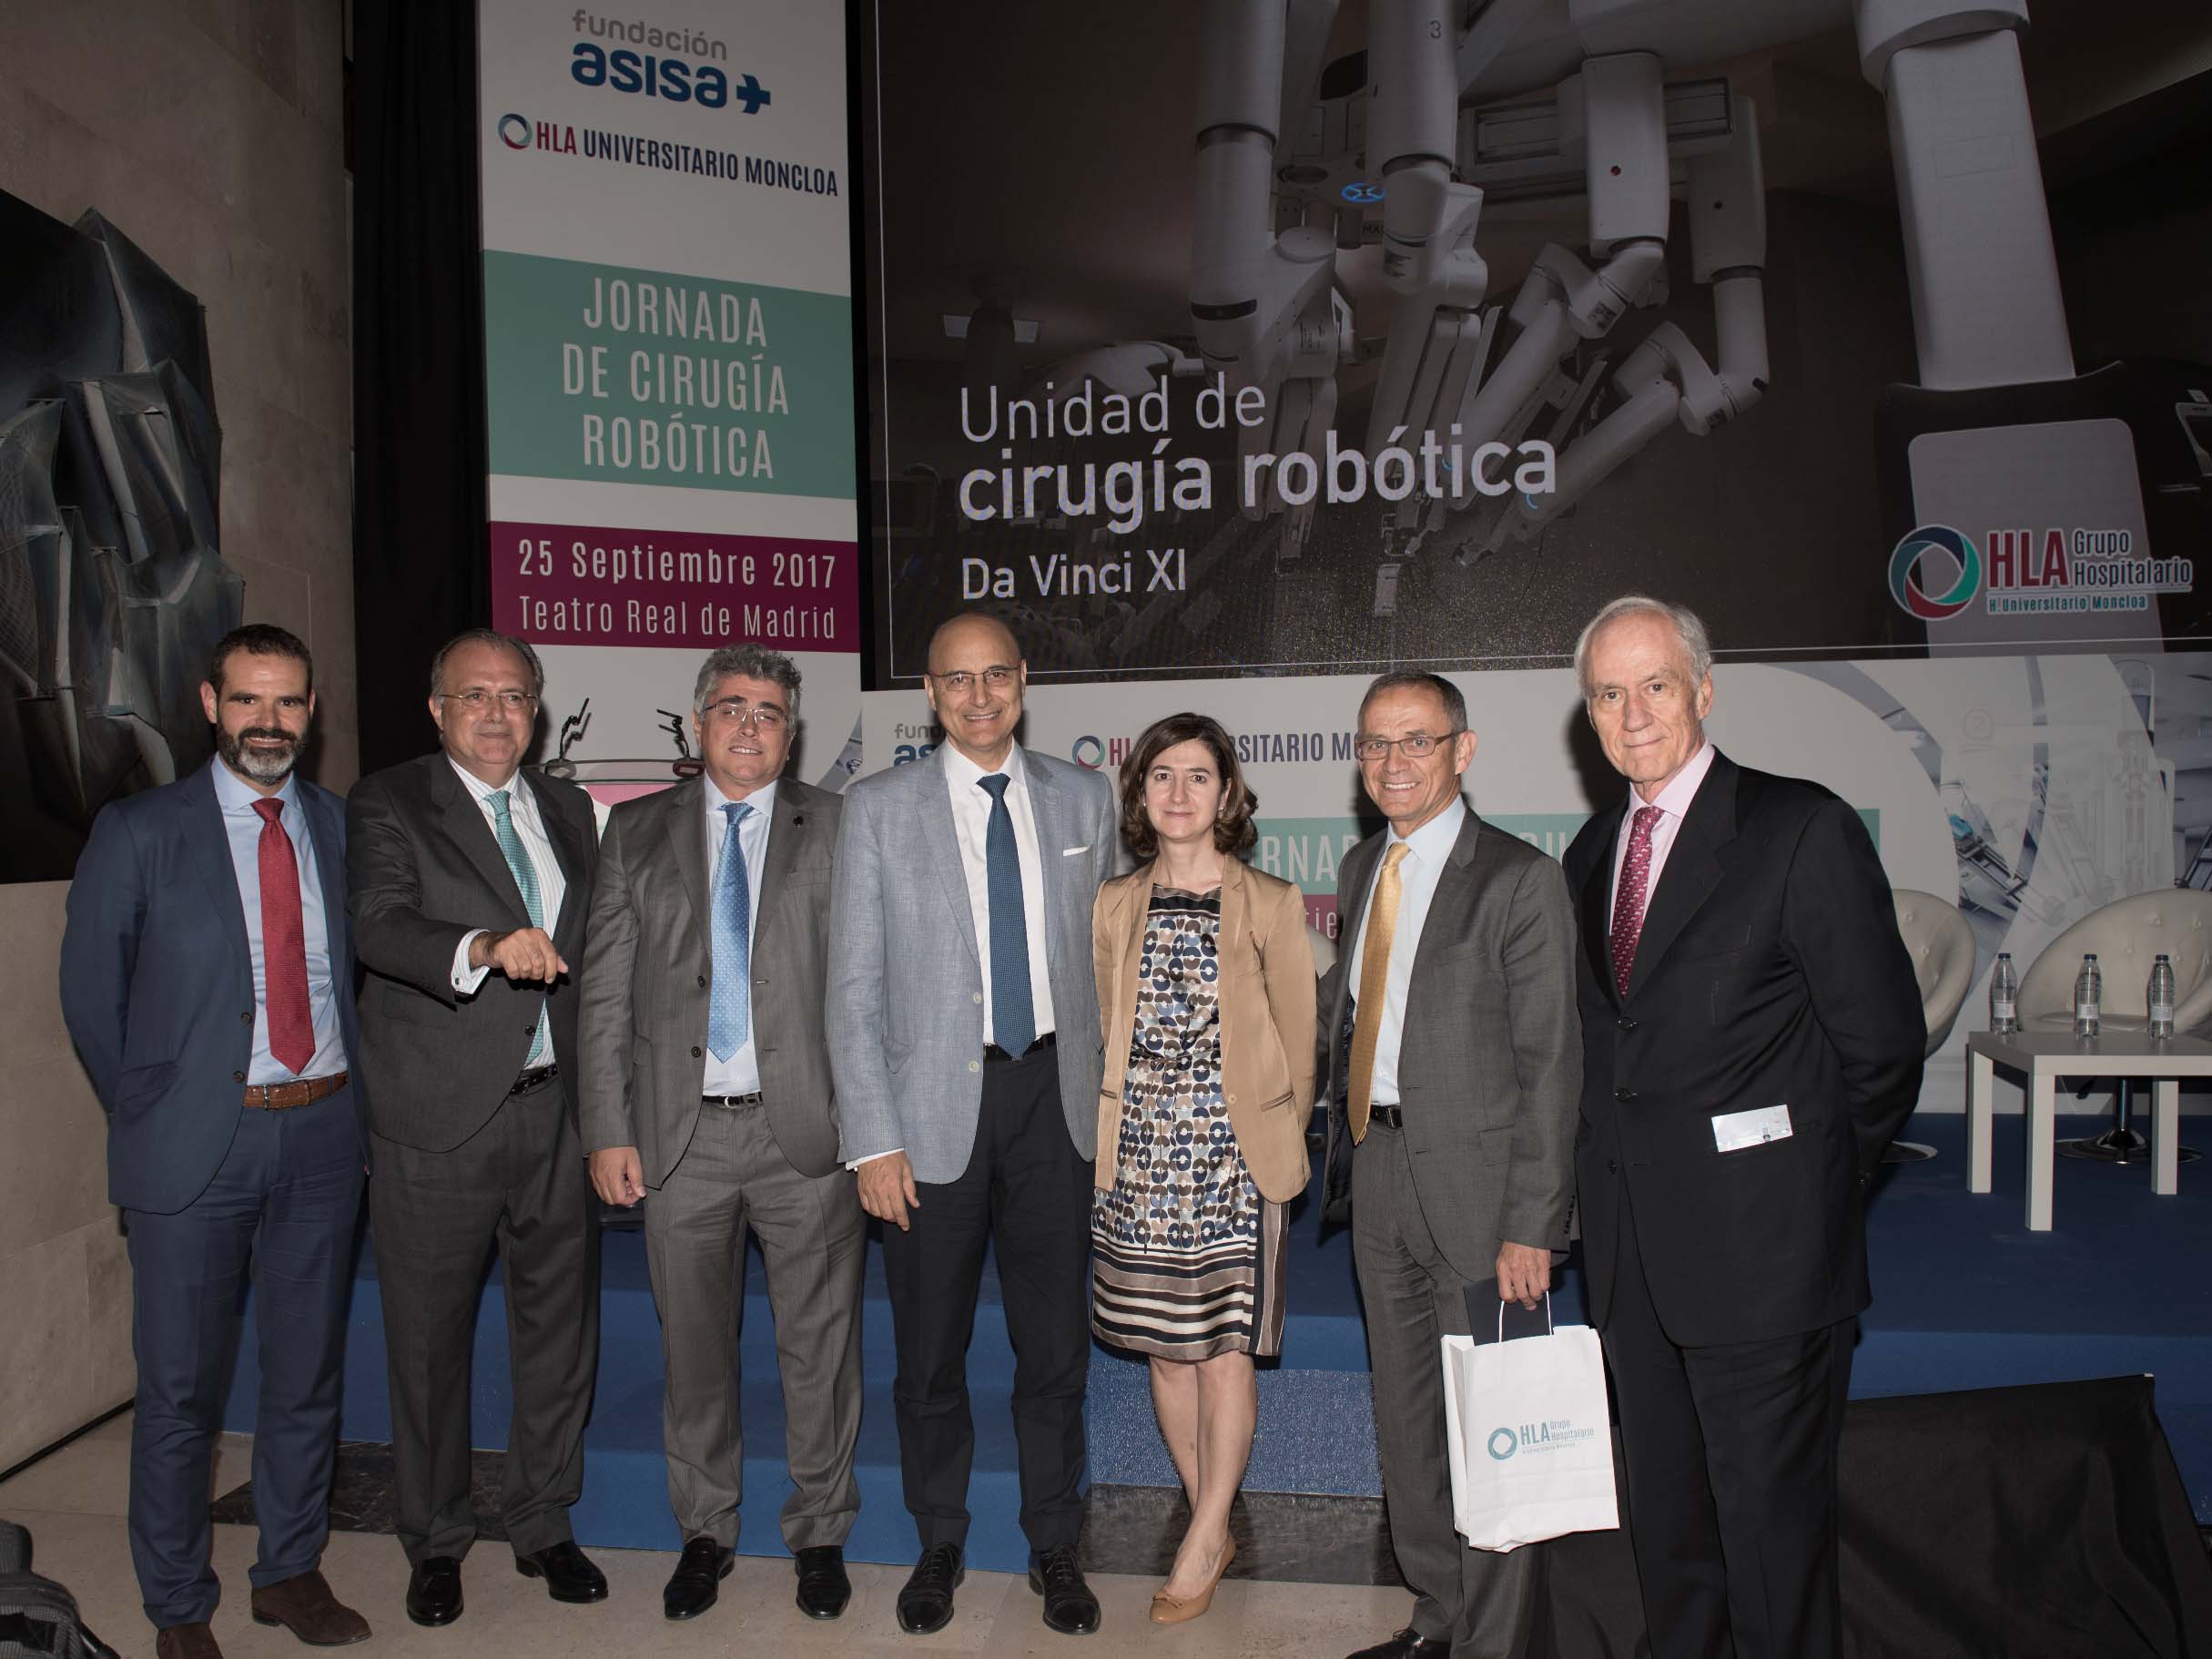 HLA Moncloa y Fundación ASISA organizan una Jornada sobre Cirugía Robótica